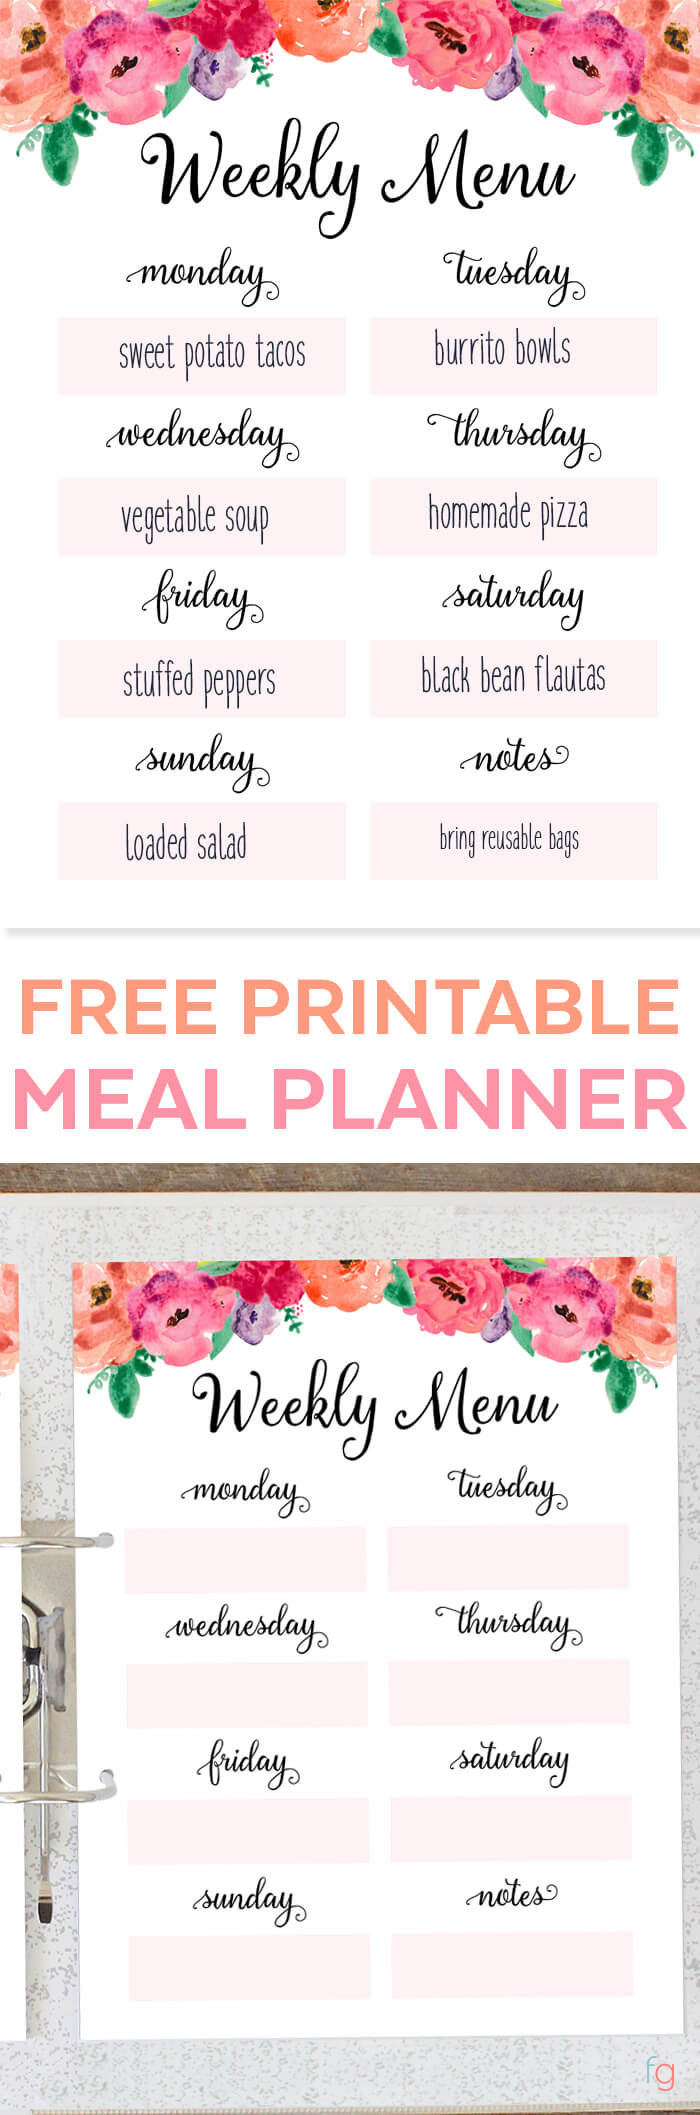 Weekly Dinner Menu Ideas
 Weekly Meal Planner Time Management Tip Free Printable